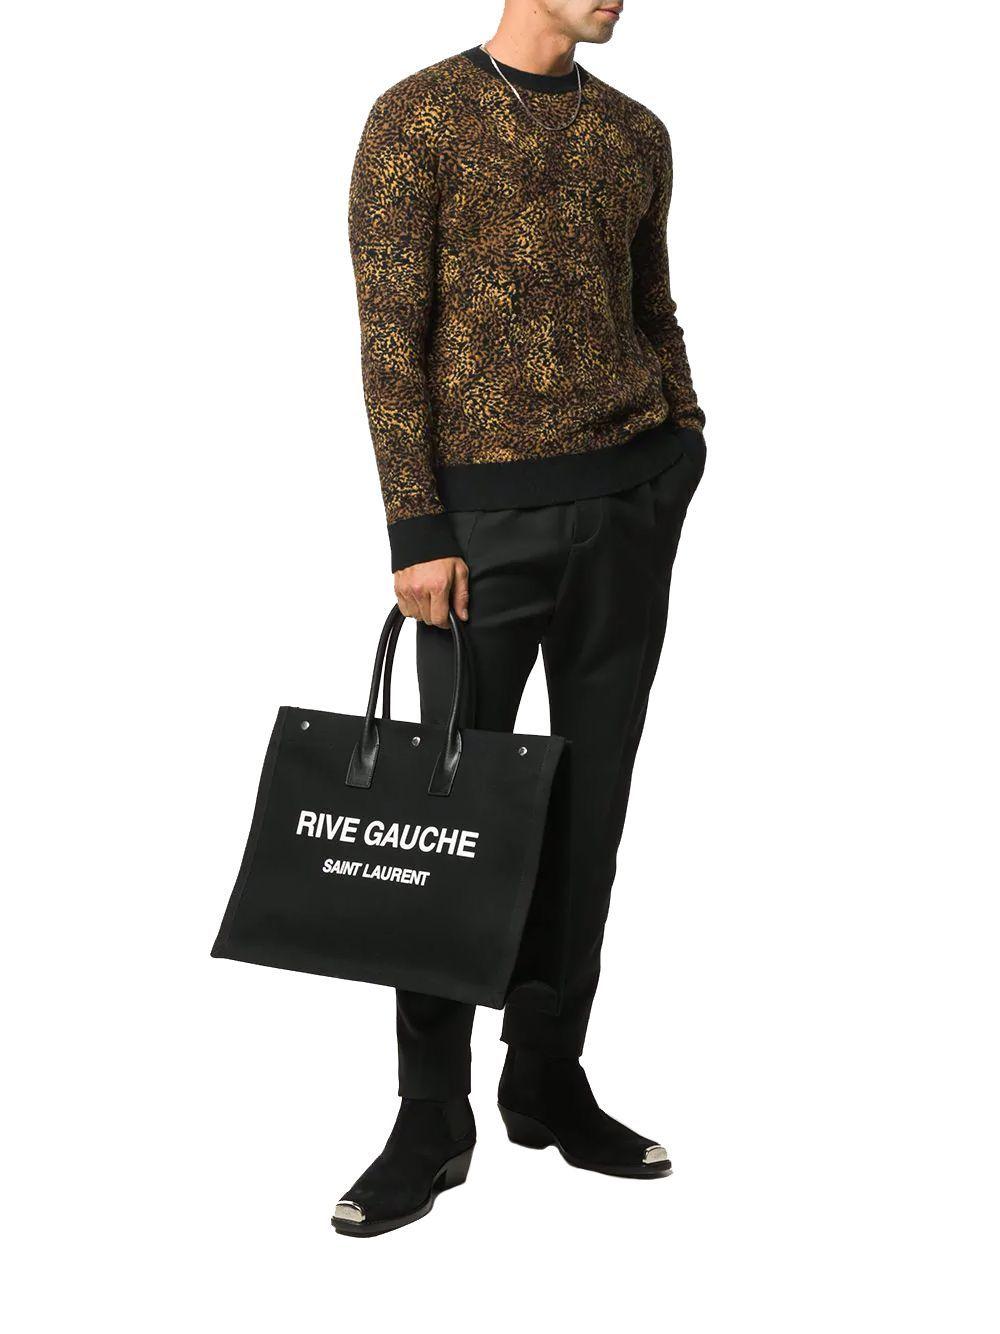 Saint Laurent Cotton Rive Gauche Tote Bag in Black for Men - Lyst